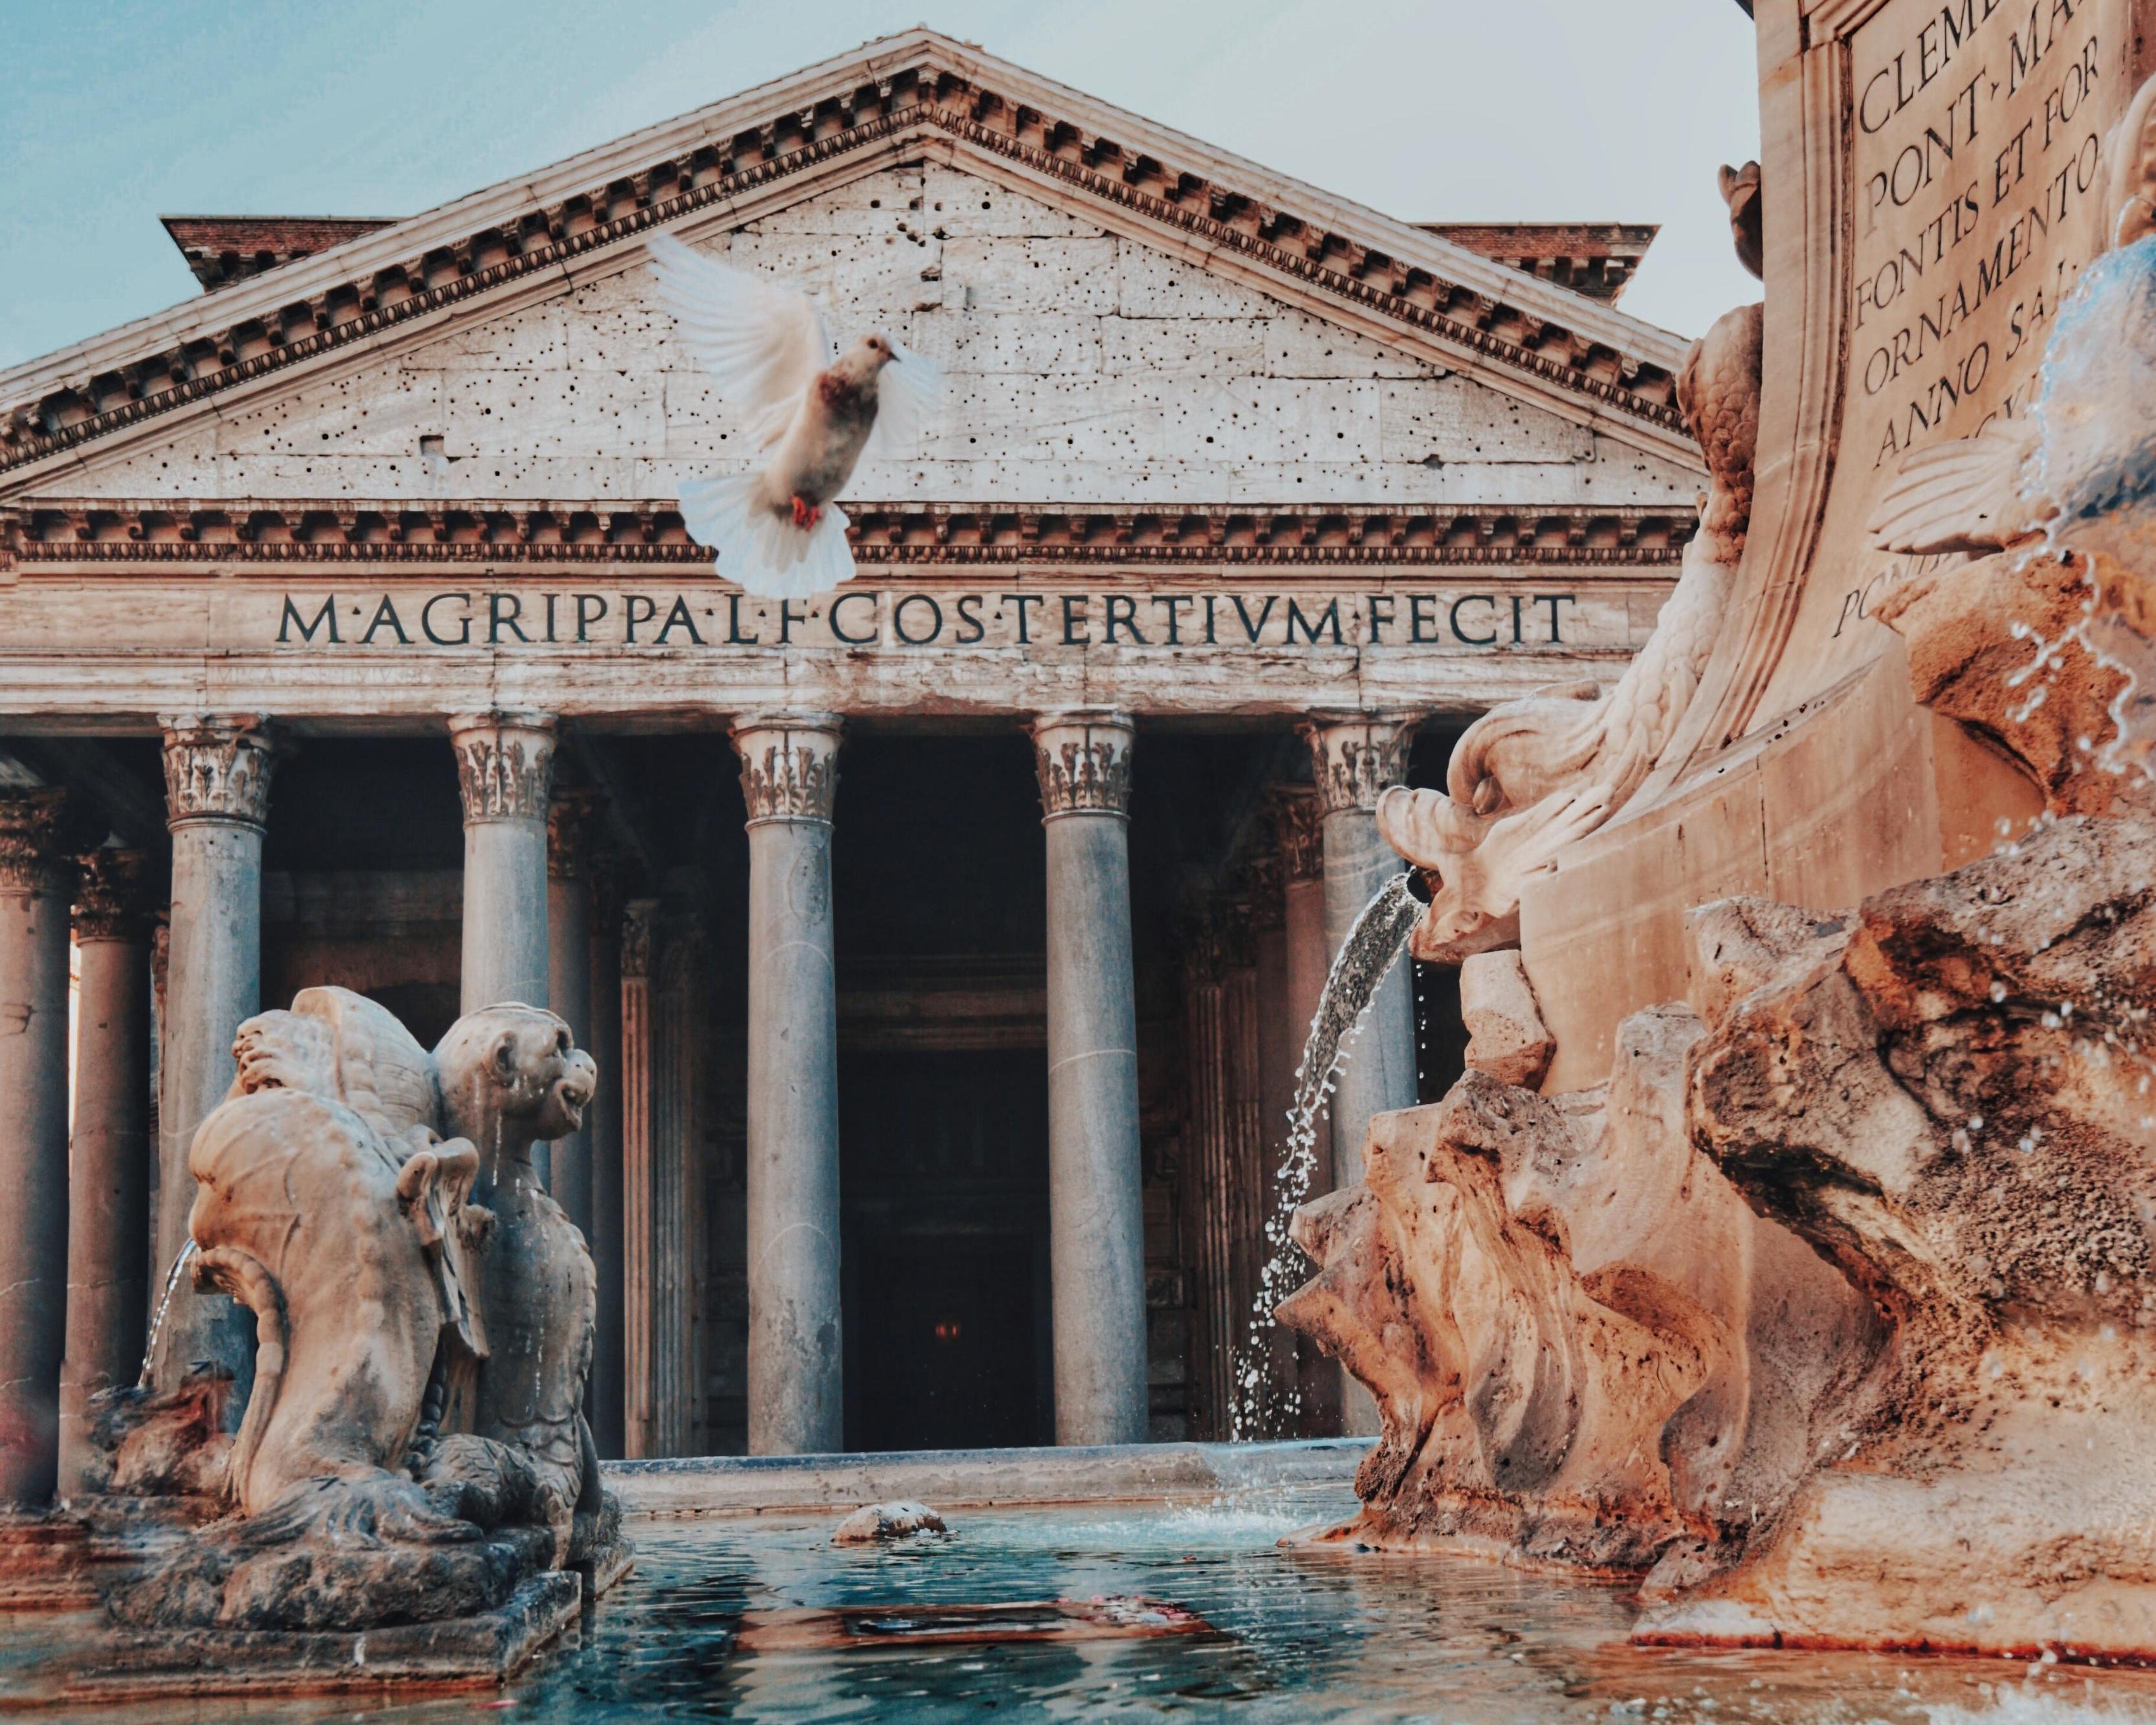 Viaje a Italia y visitando Roma